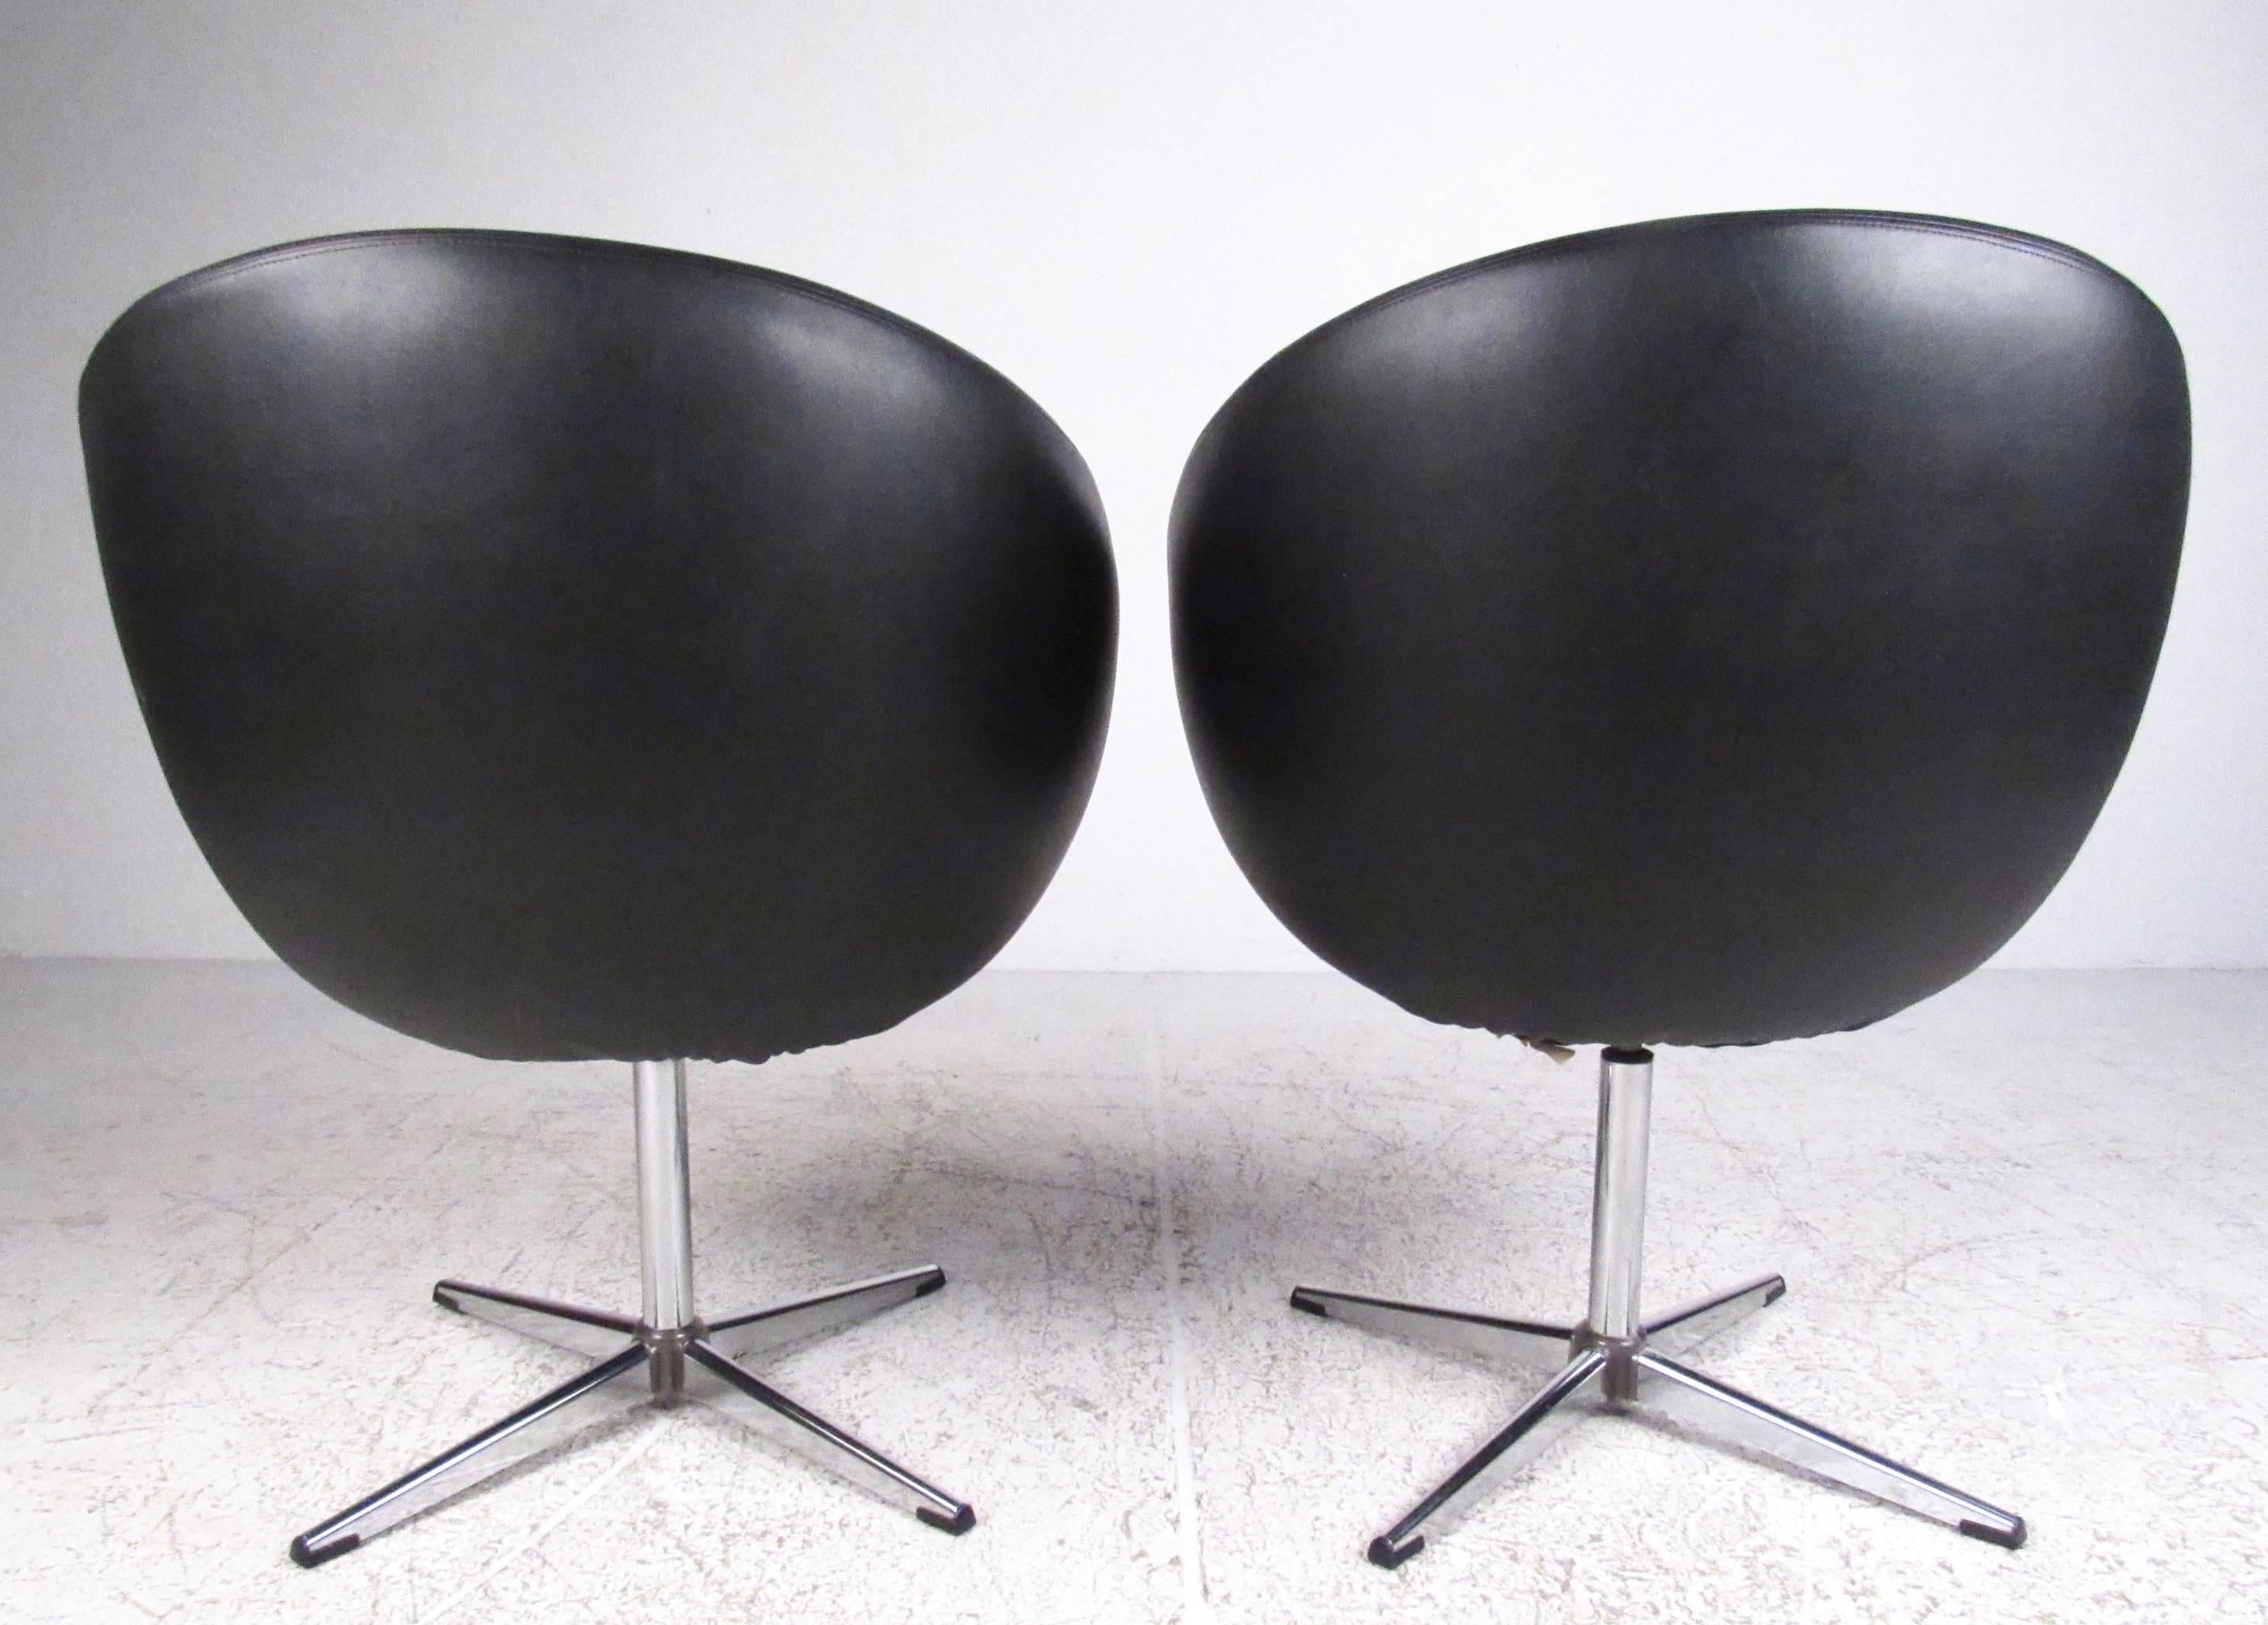 Cette paire emblématique de chaises overman pod se caractérise par des sièges pivotants sur une base robuste en 